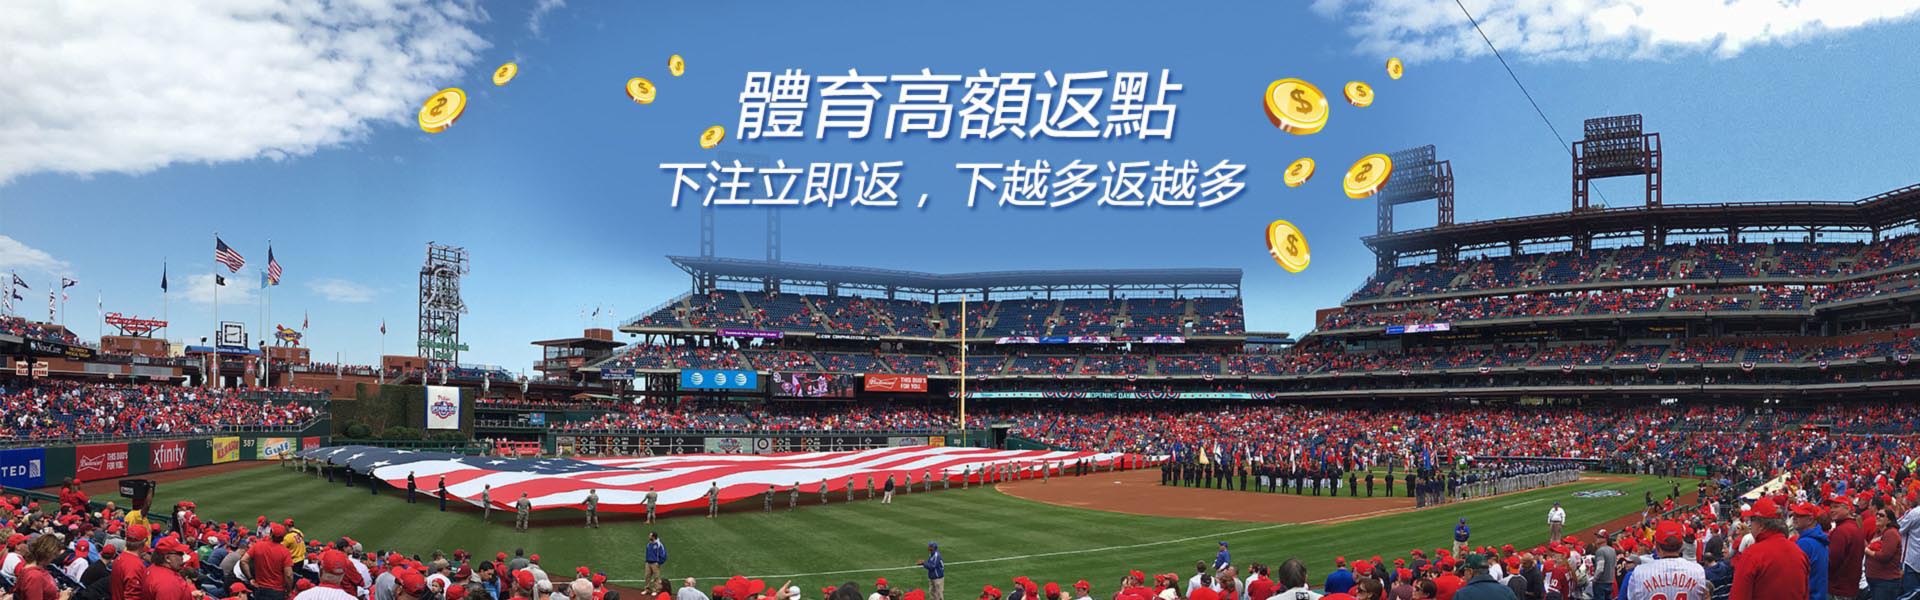 九州娛樂城-mlb 美國職棒大聯盟中文網站賽程表